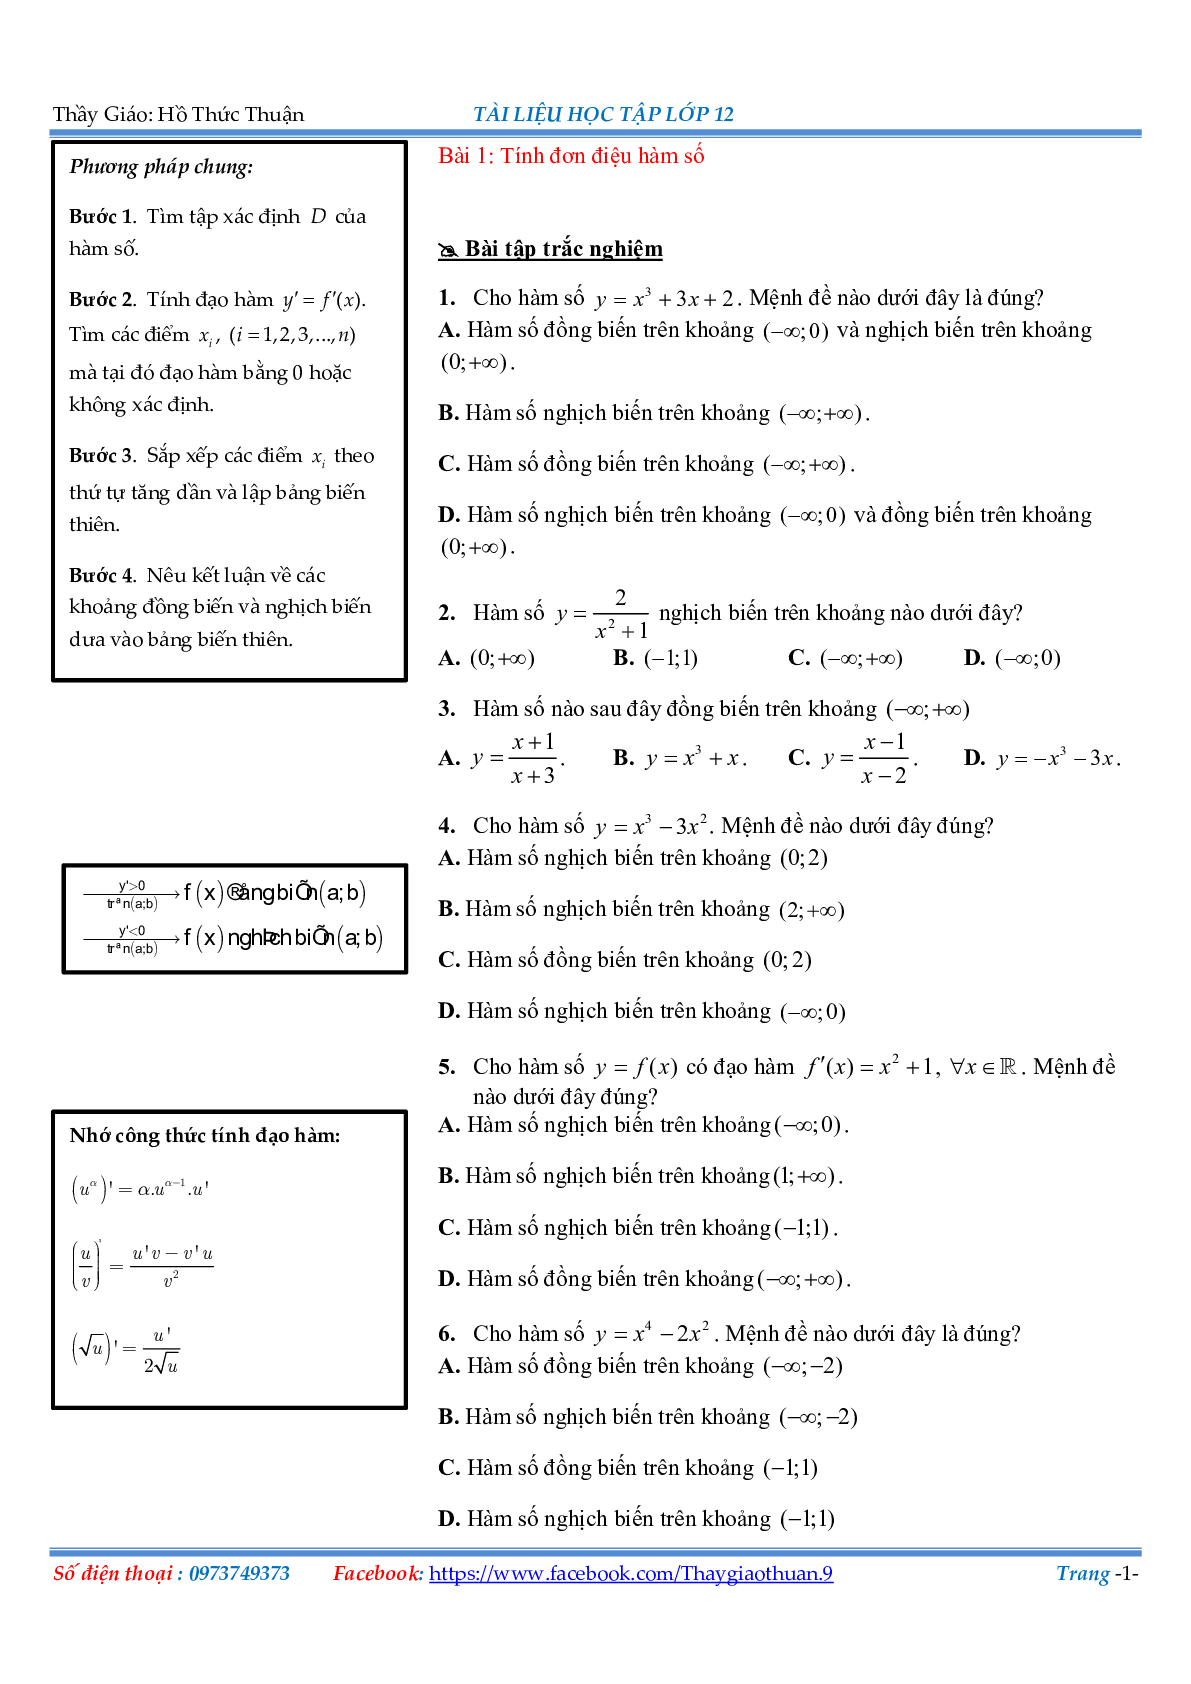 Bài tập về các cách giải đơn điệu Hàm số (trang 1)